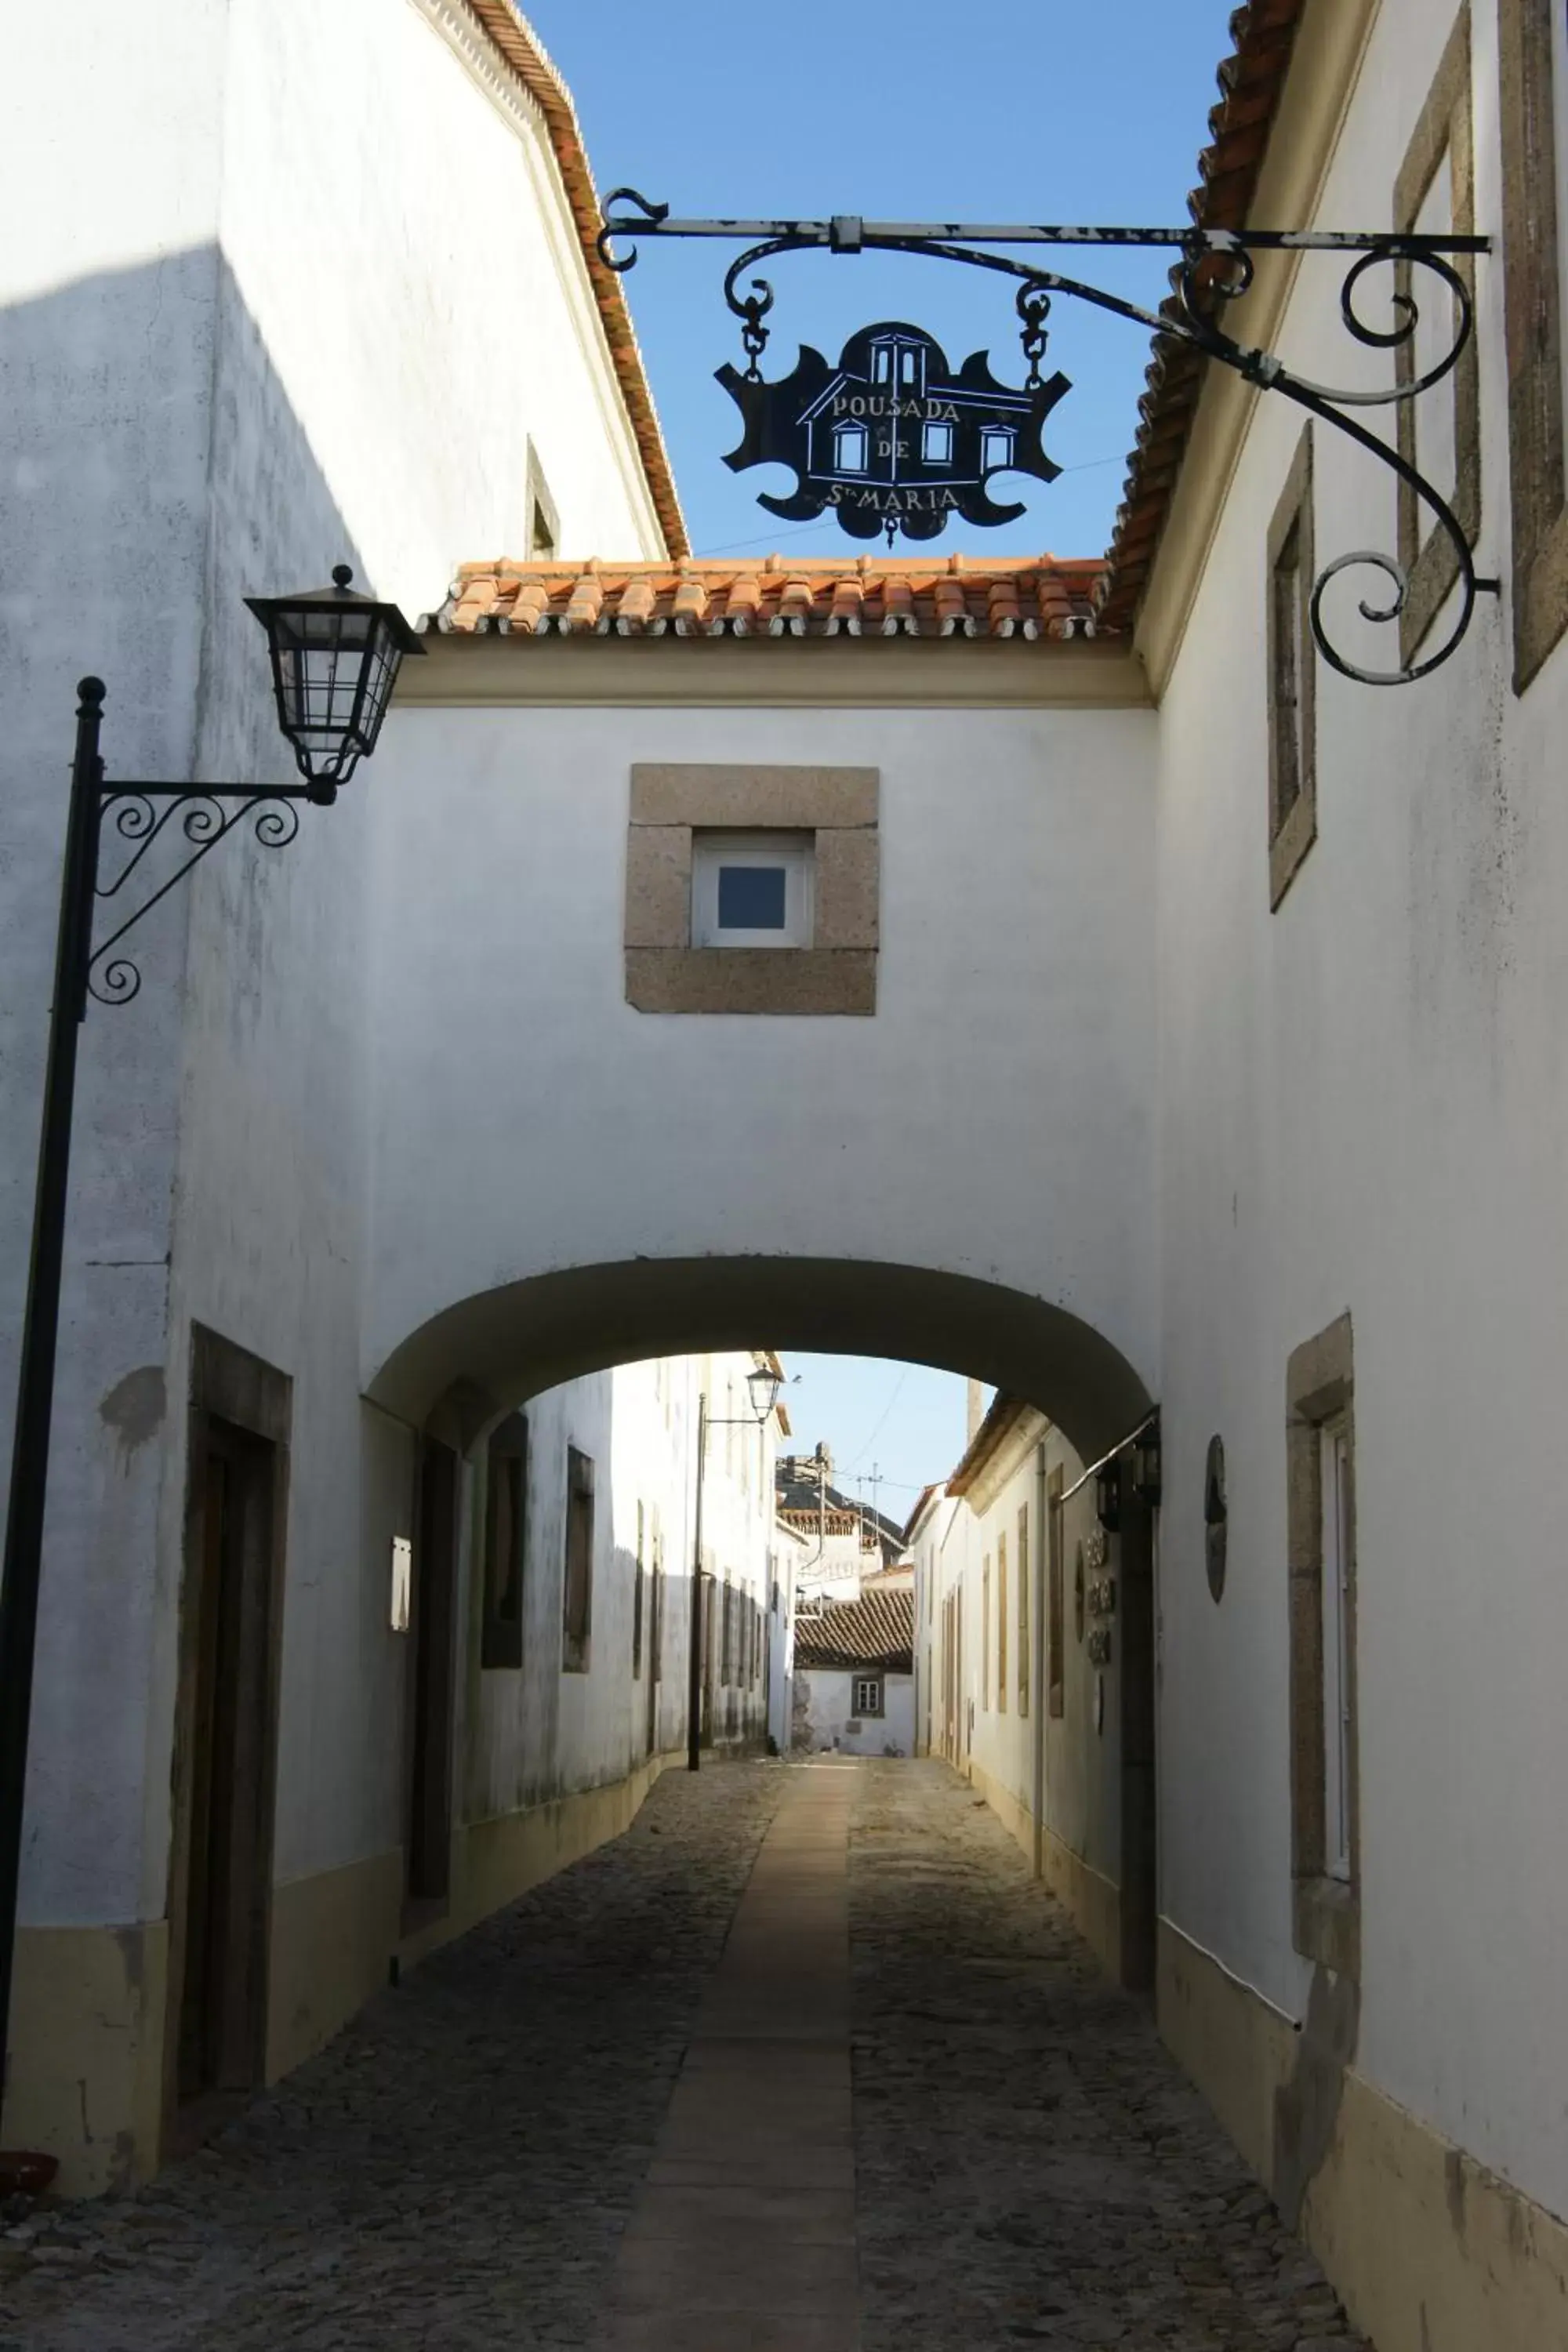 Facade/entrance in Pousada de Marvao